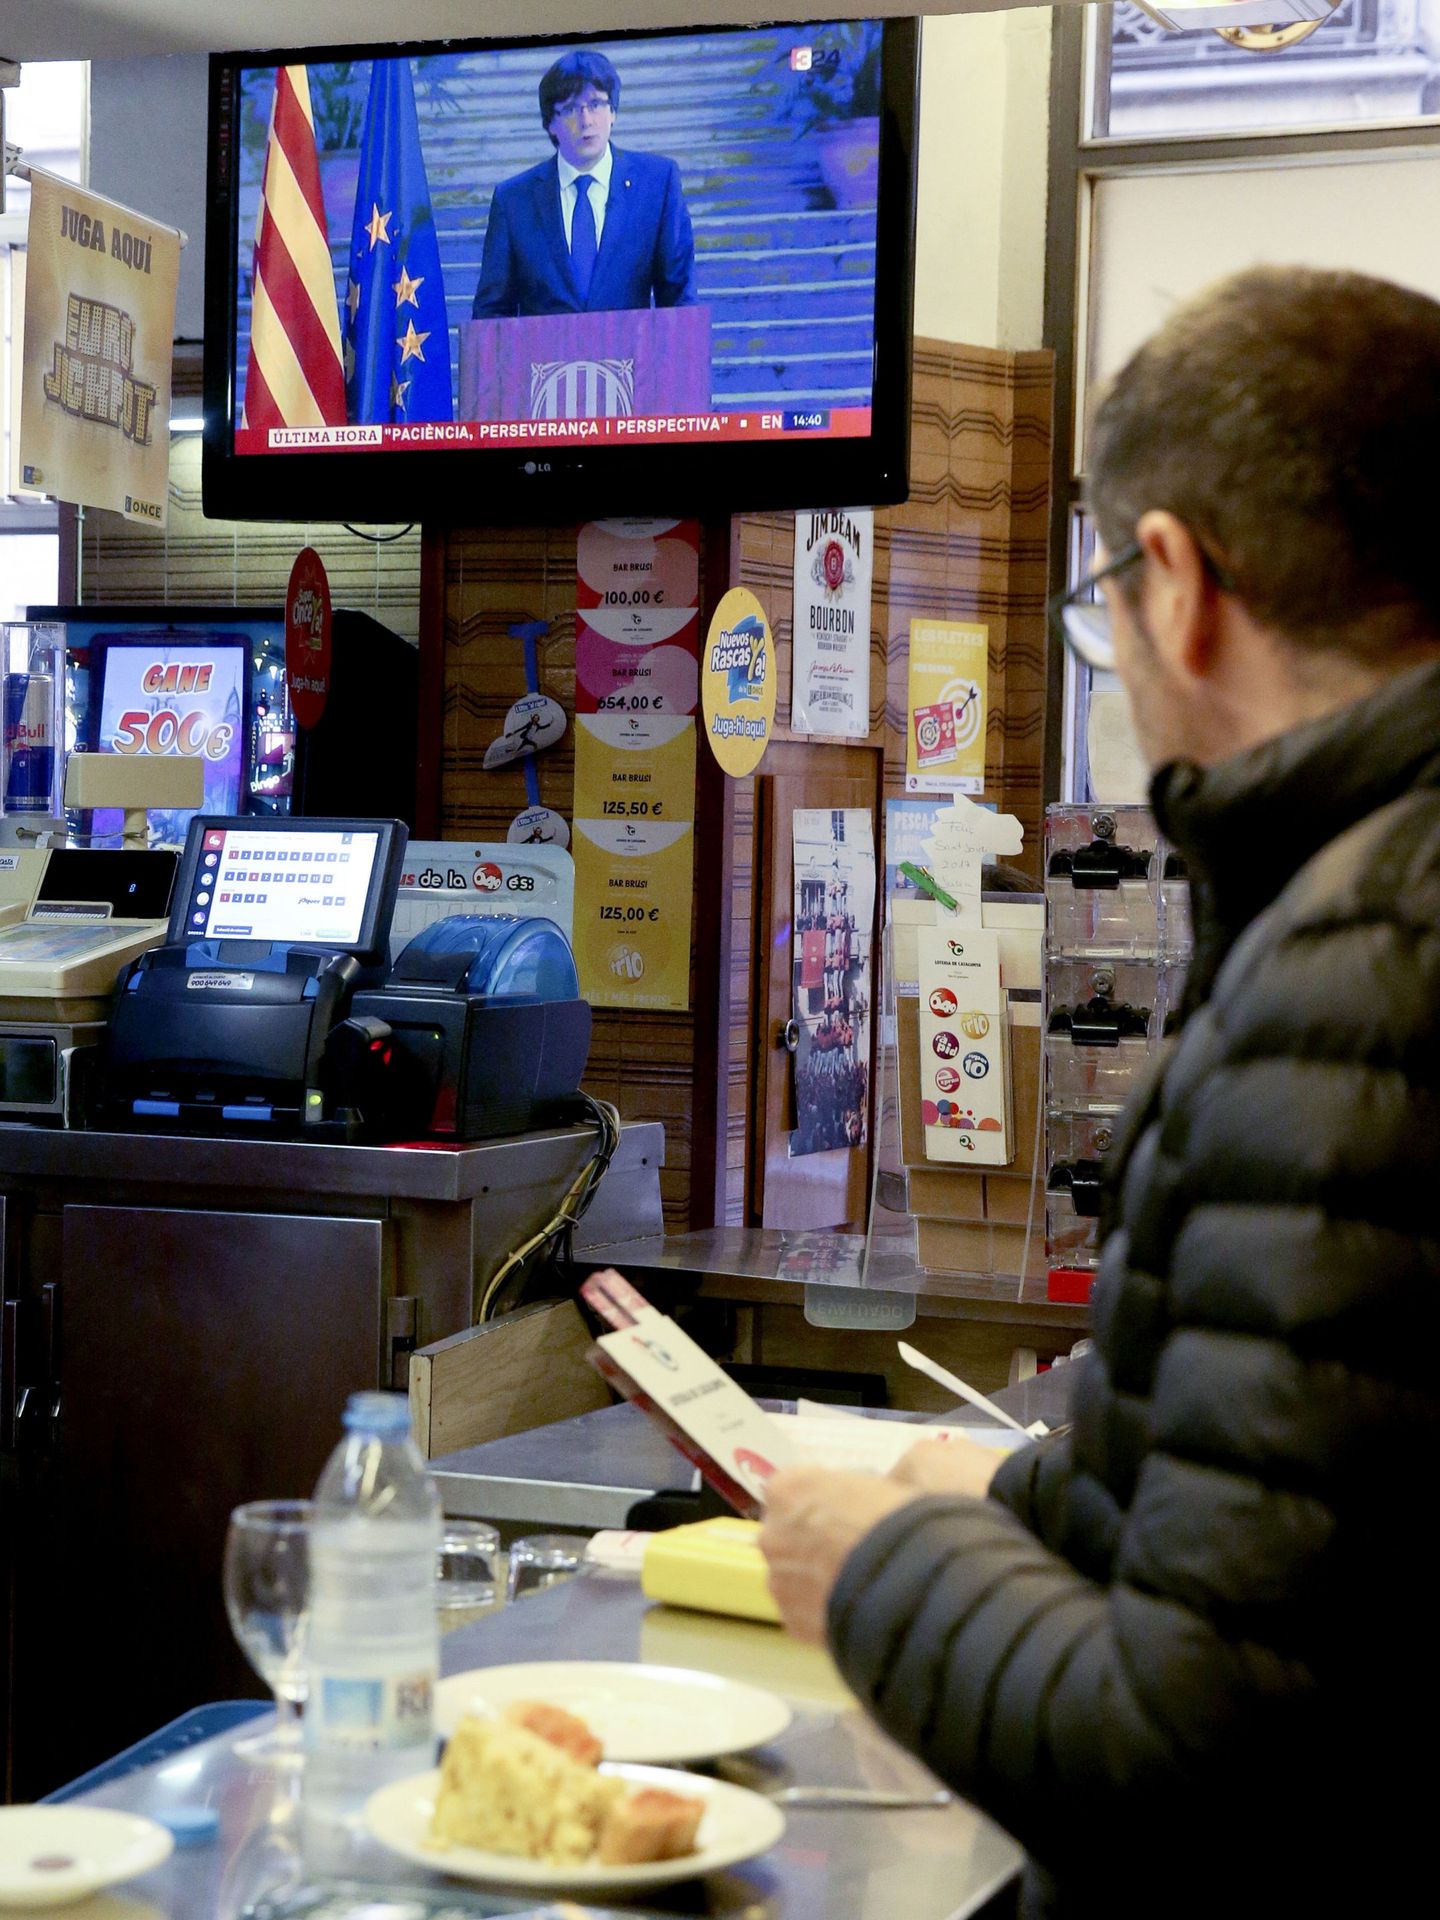 Un hombre sigue en la televisión de un bar la declaración de Carles Puigdemont. (EFE)